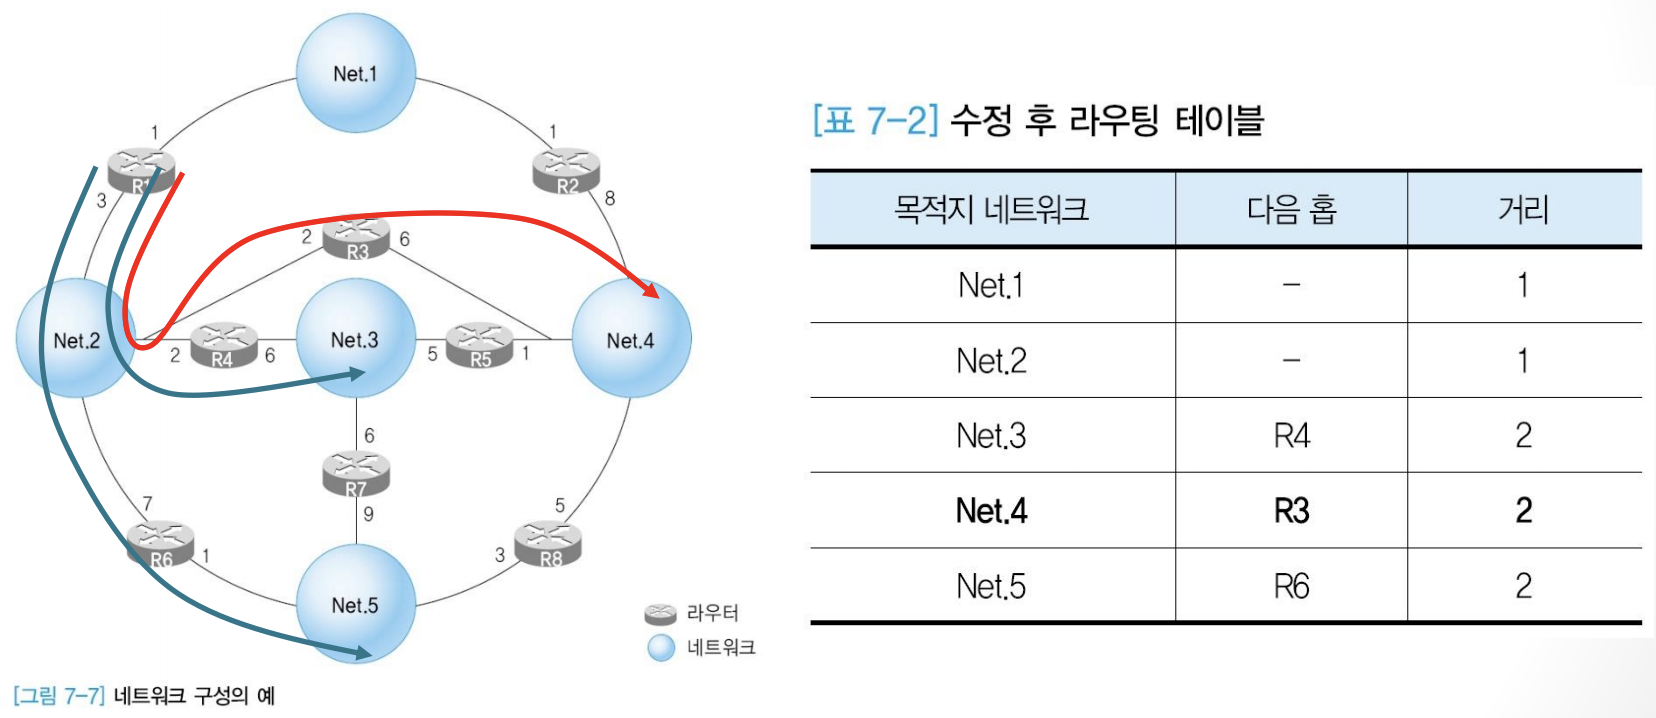 수정 후 네트워크 구성과 라우팅 테이블